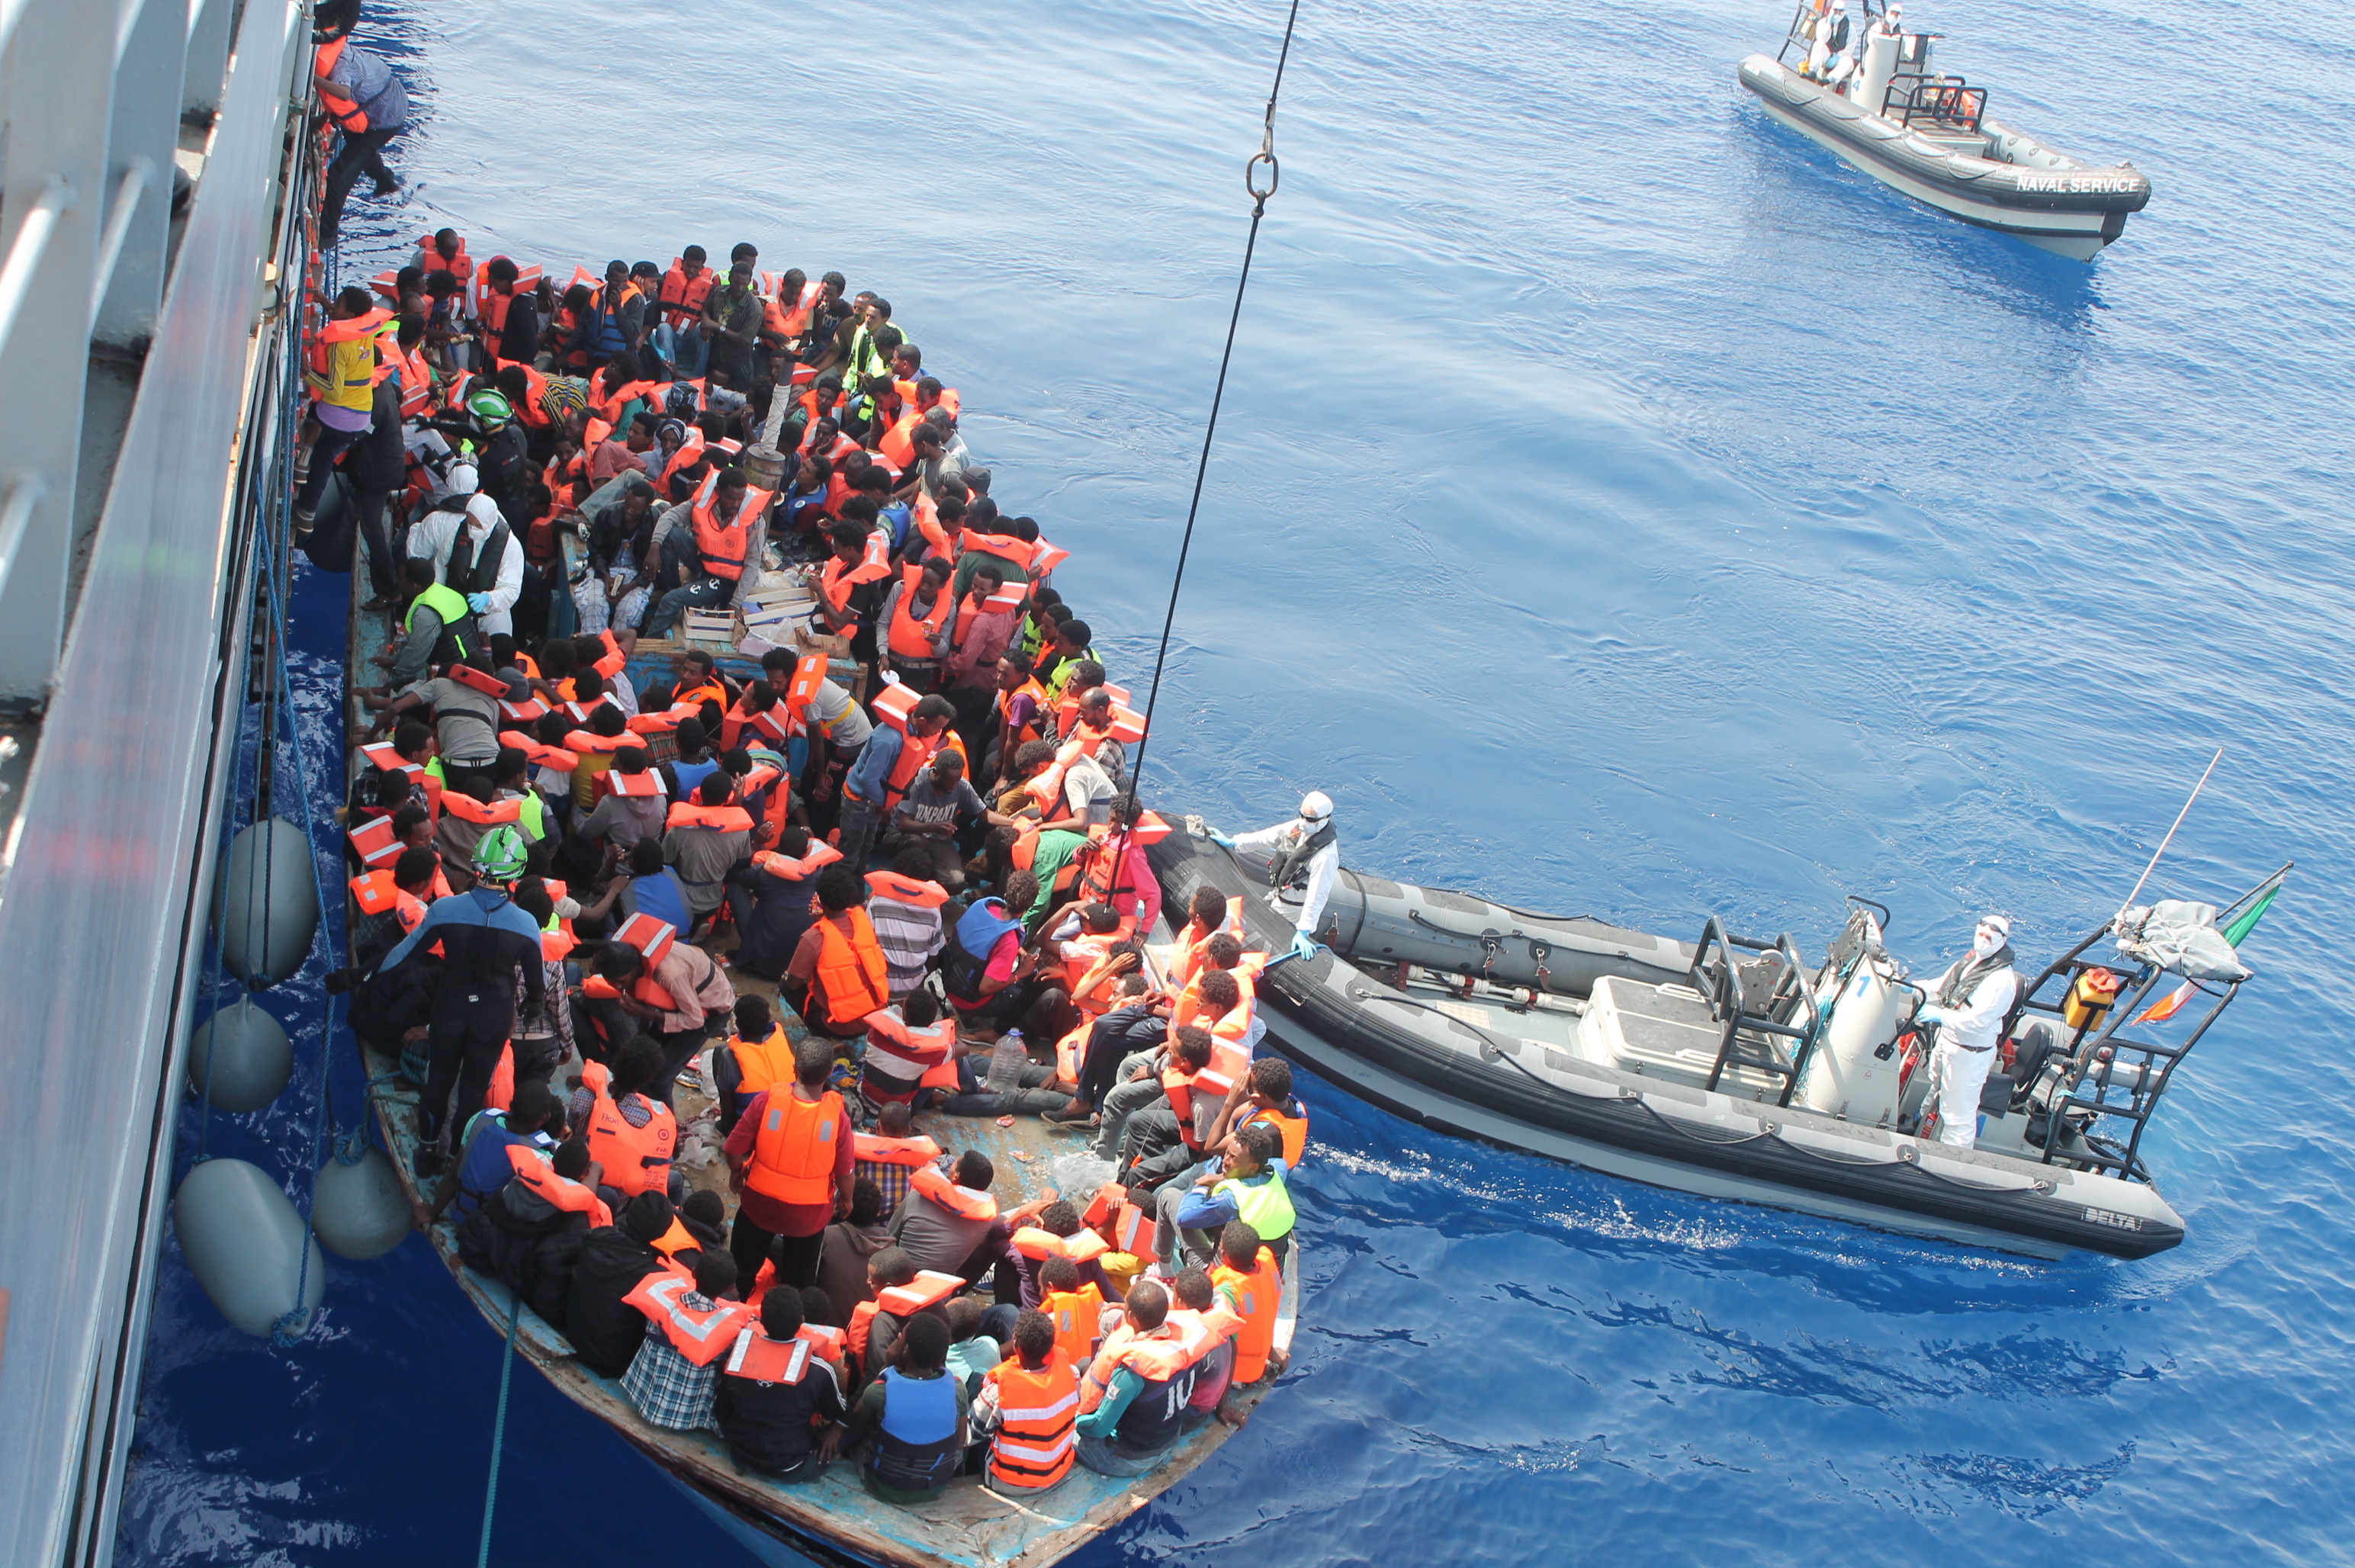 Navigare a vista, il racconto delle operazioni di ricerca e soccorso di migranti nel Mediterraneo centrale